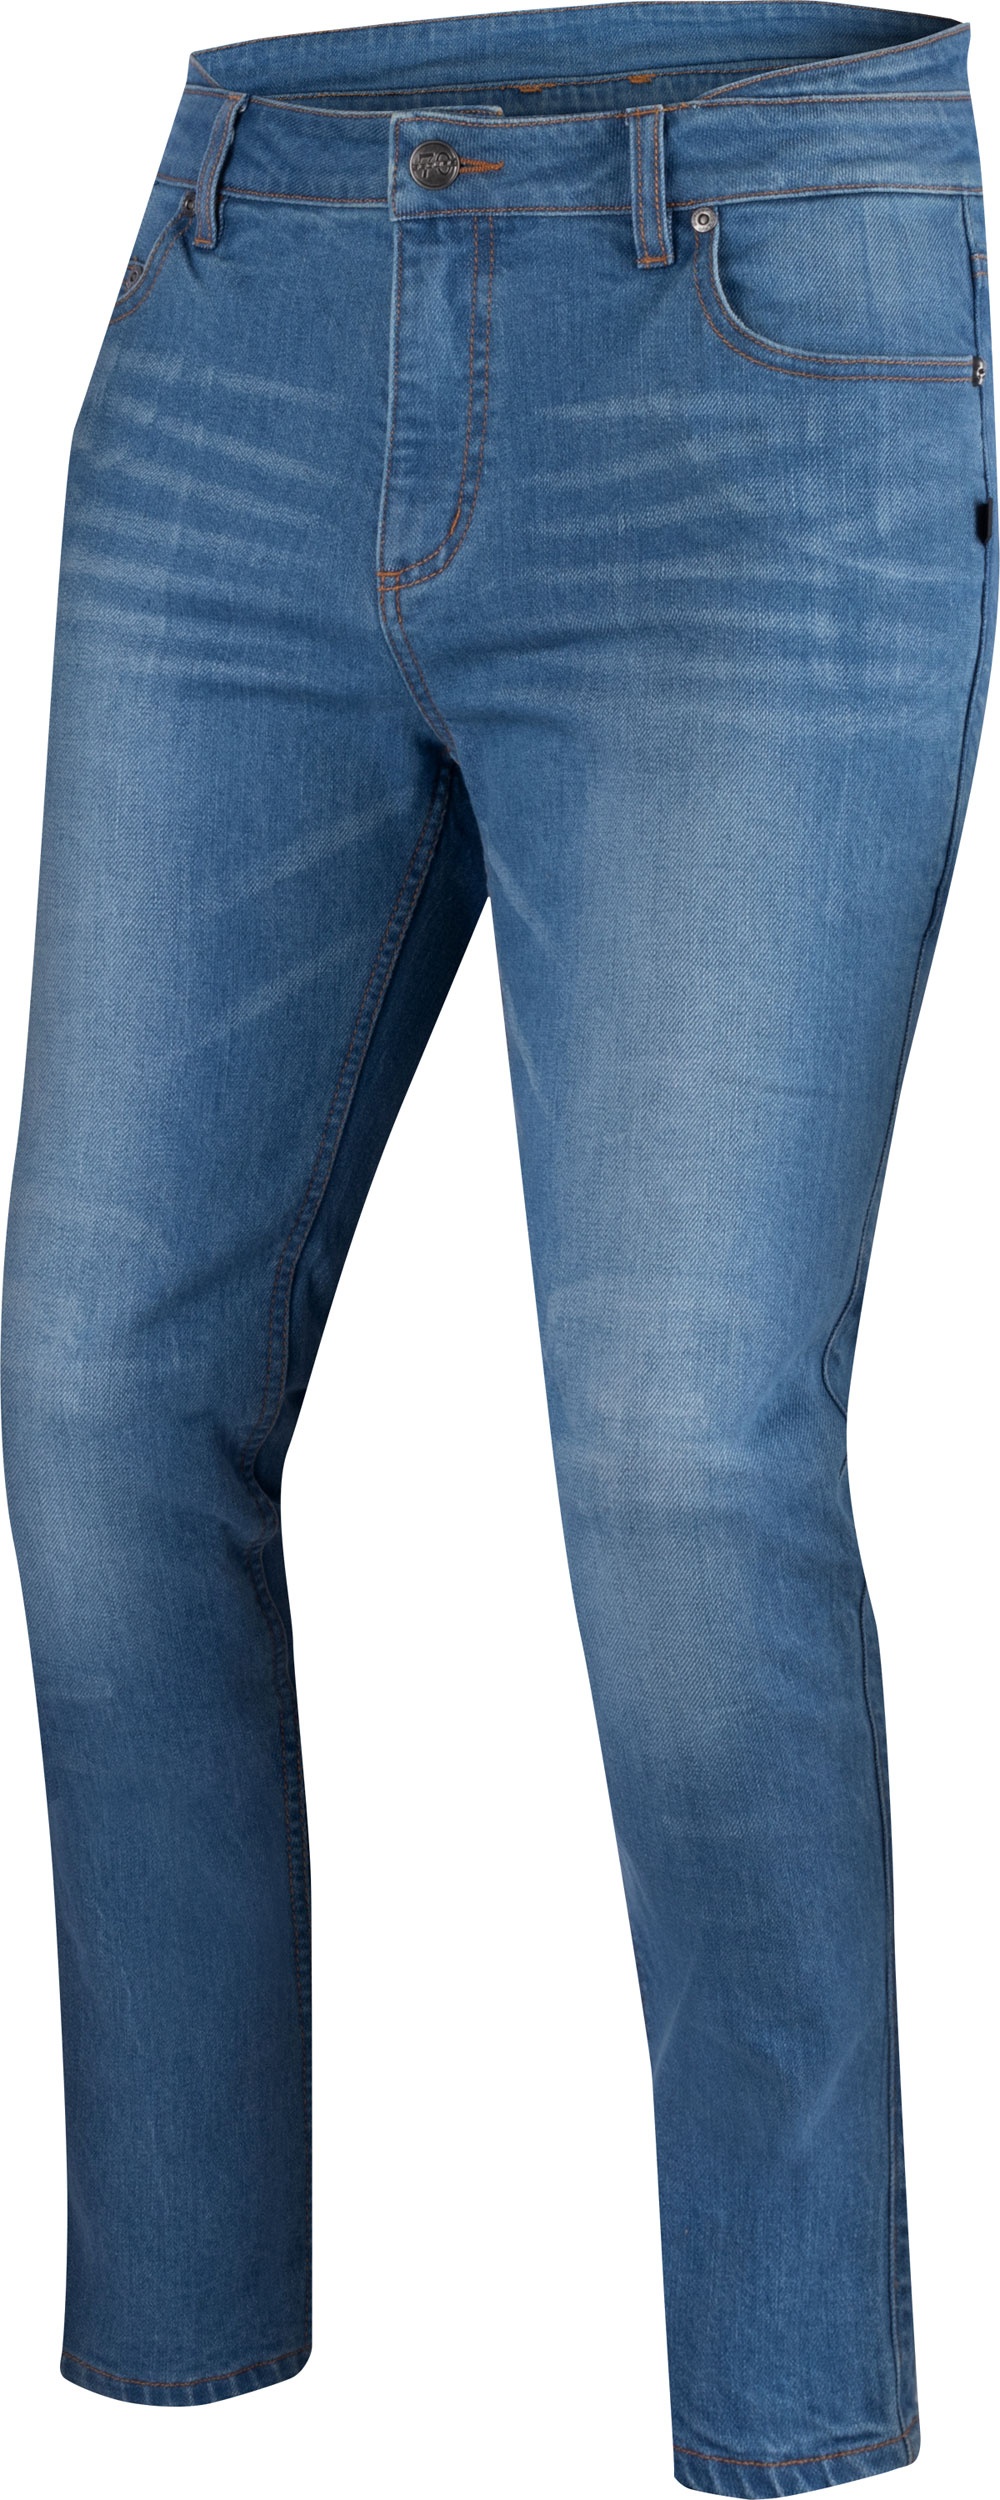 Segura Rosco, jeans - Bleu - L